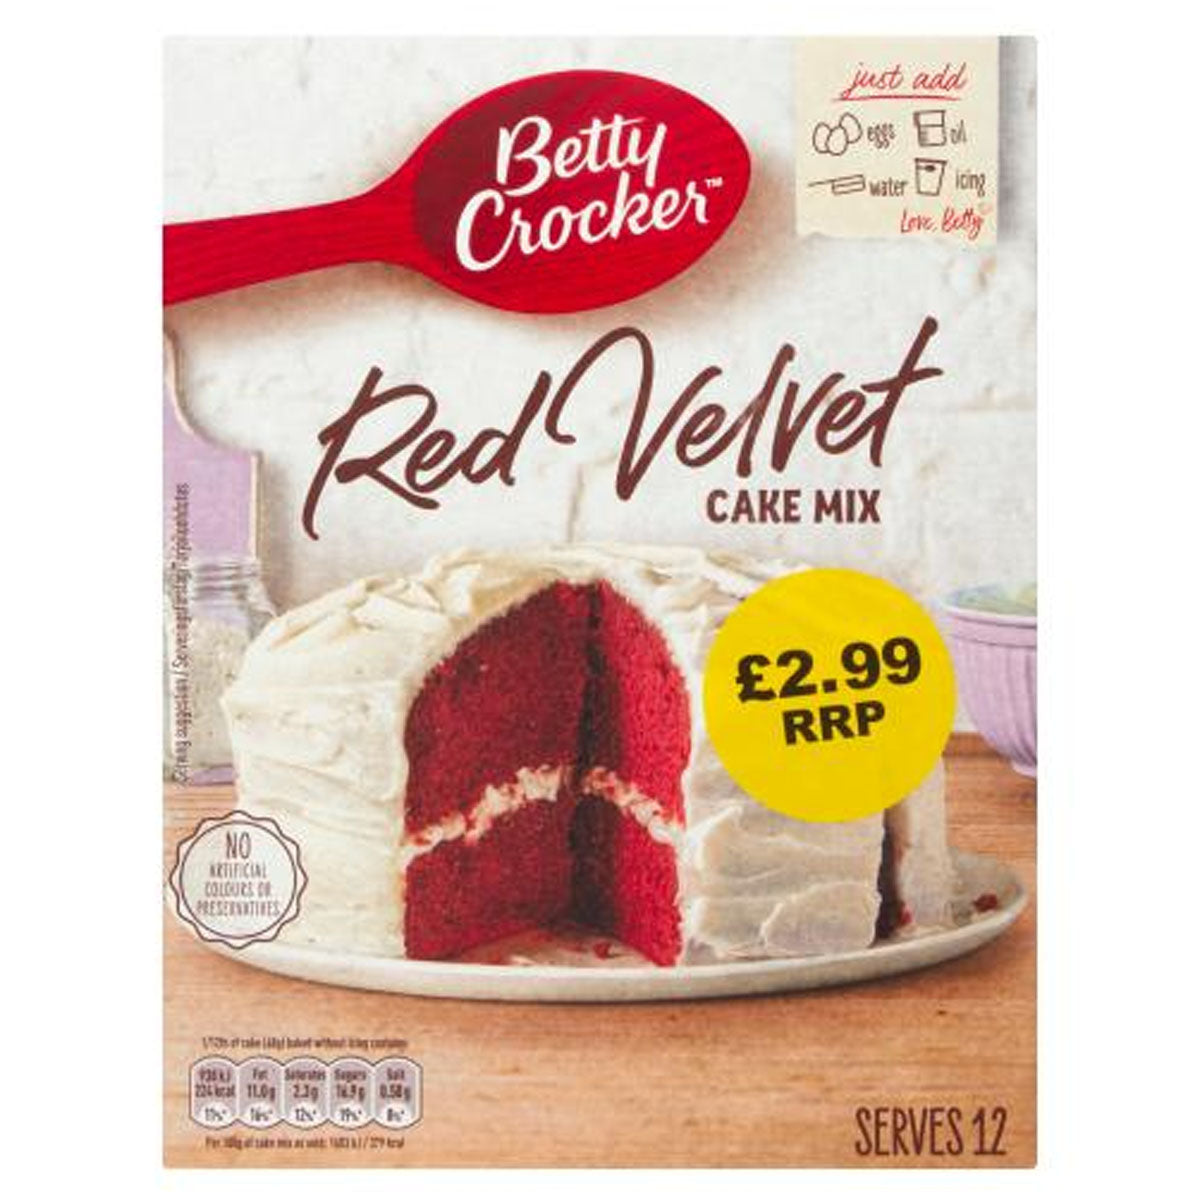 Betty Crocker - Red Velvet Cake Mix - 425g.